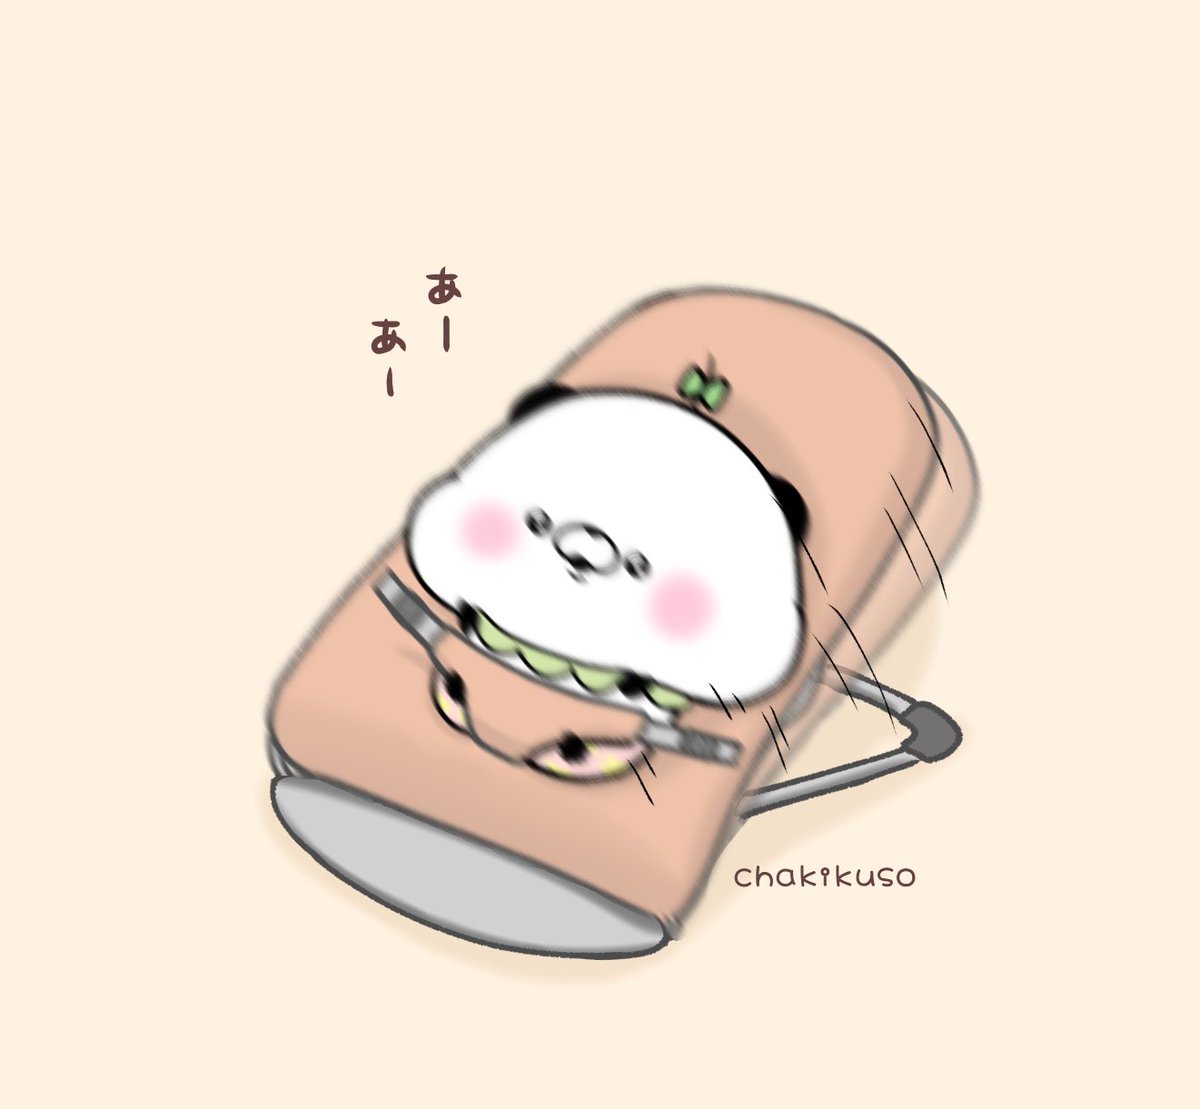 「バウンサーで遊ぶパンぴぃちゃん#こころにパンダ #イラスト 」|chakikusoのイラスト